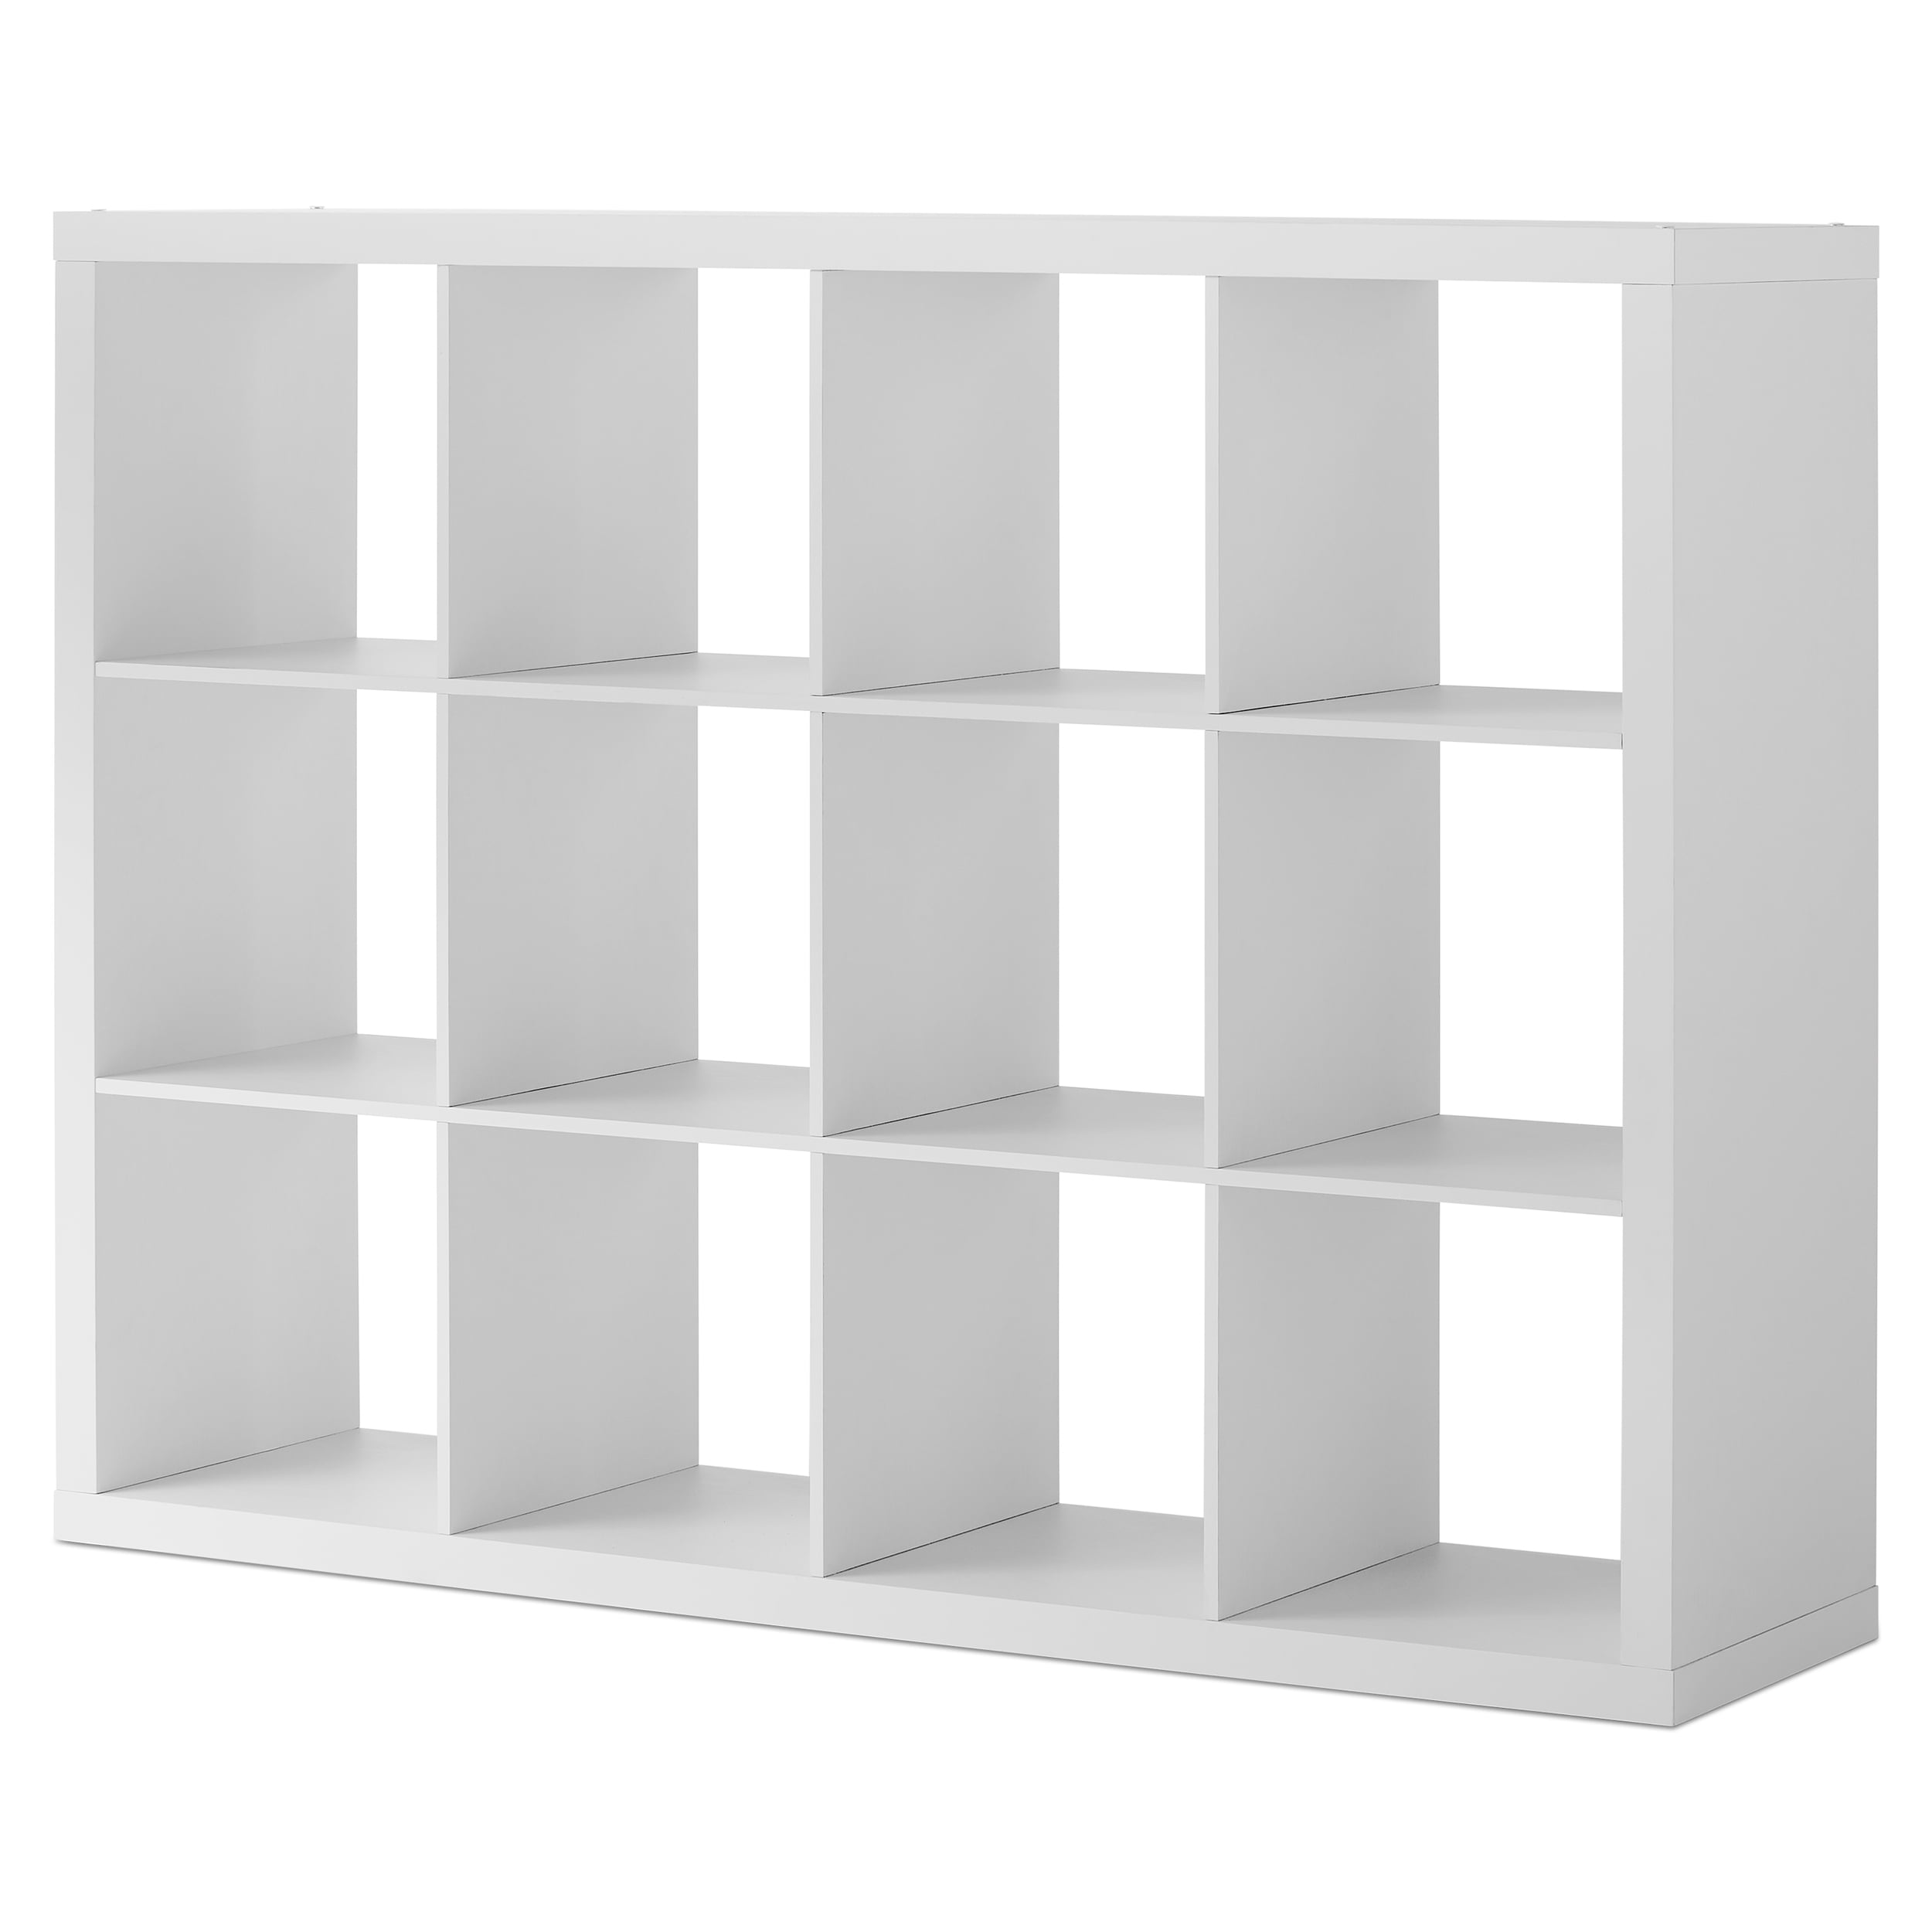 Better Homes & Gardens 12-Cube Storage Organizer, White Texture ...